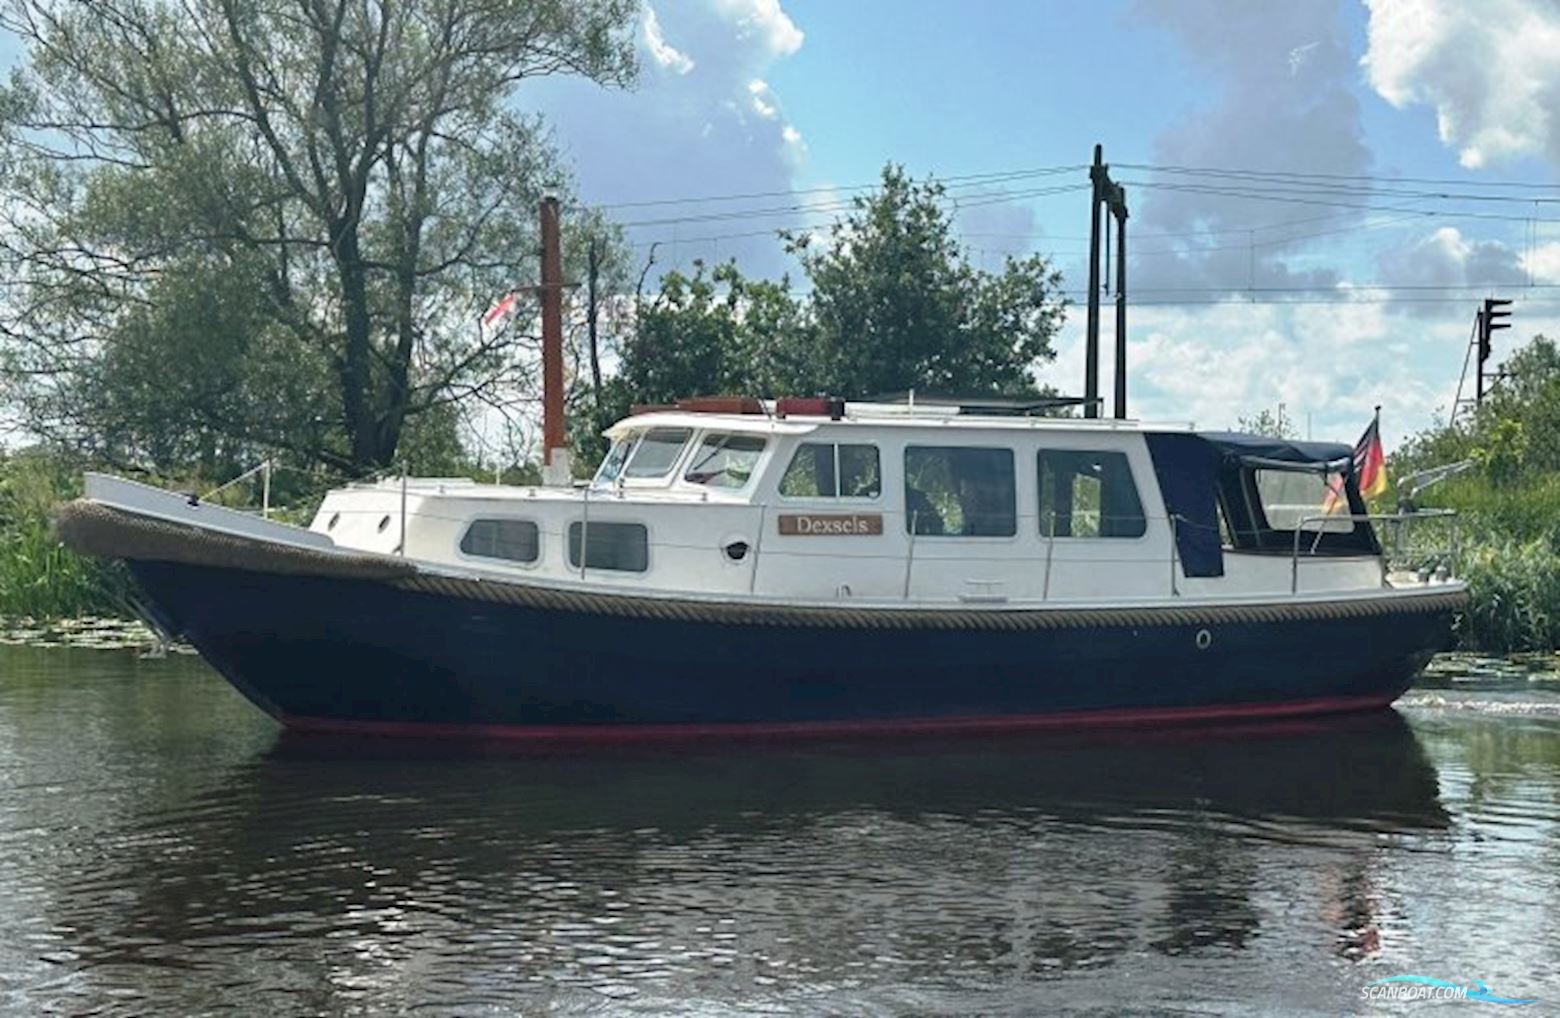 Westerdijkvlet OK Motorbåt 1992, med Daf motor, Holland